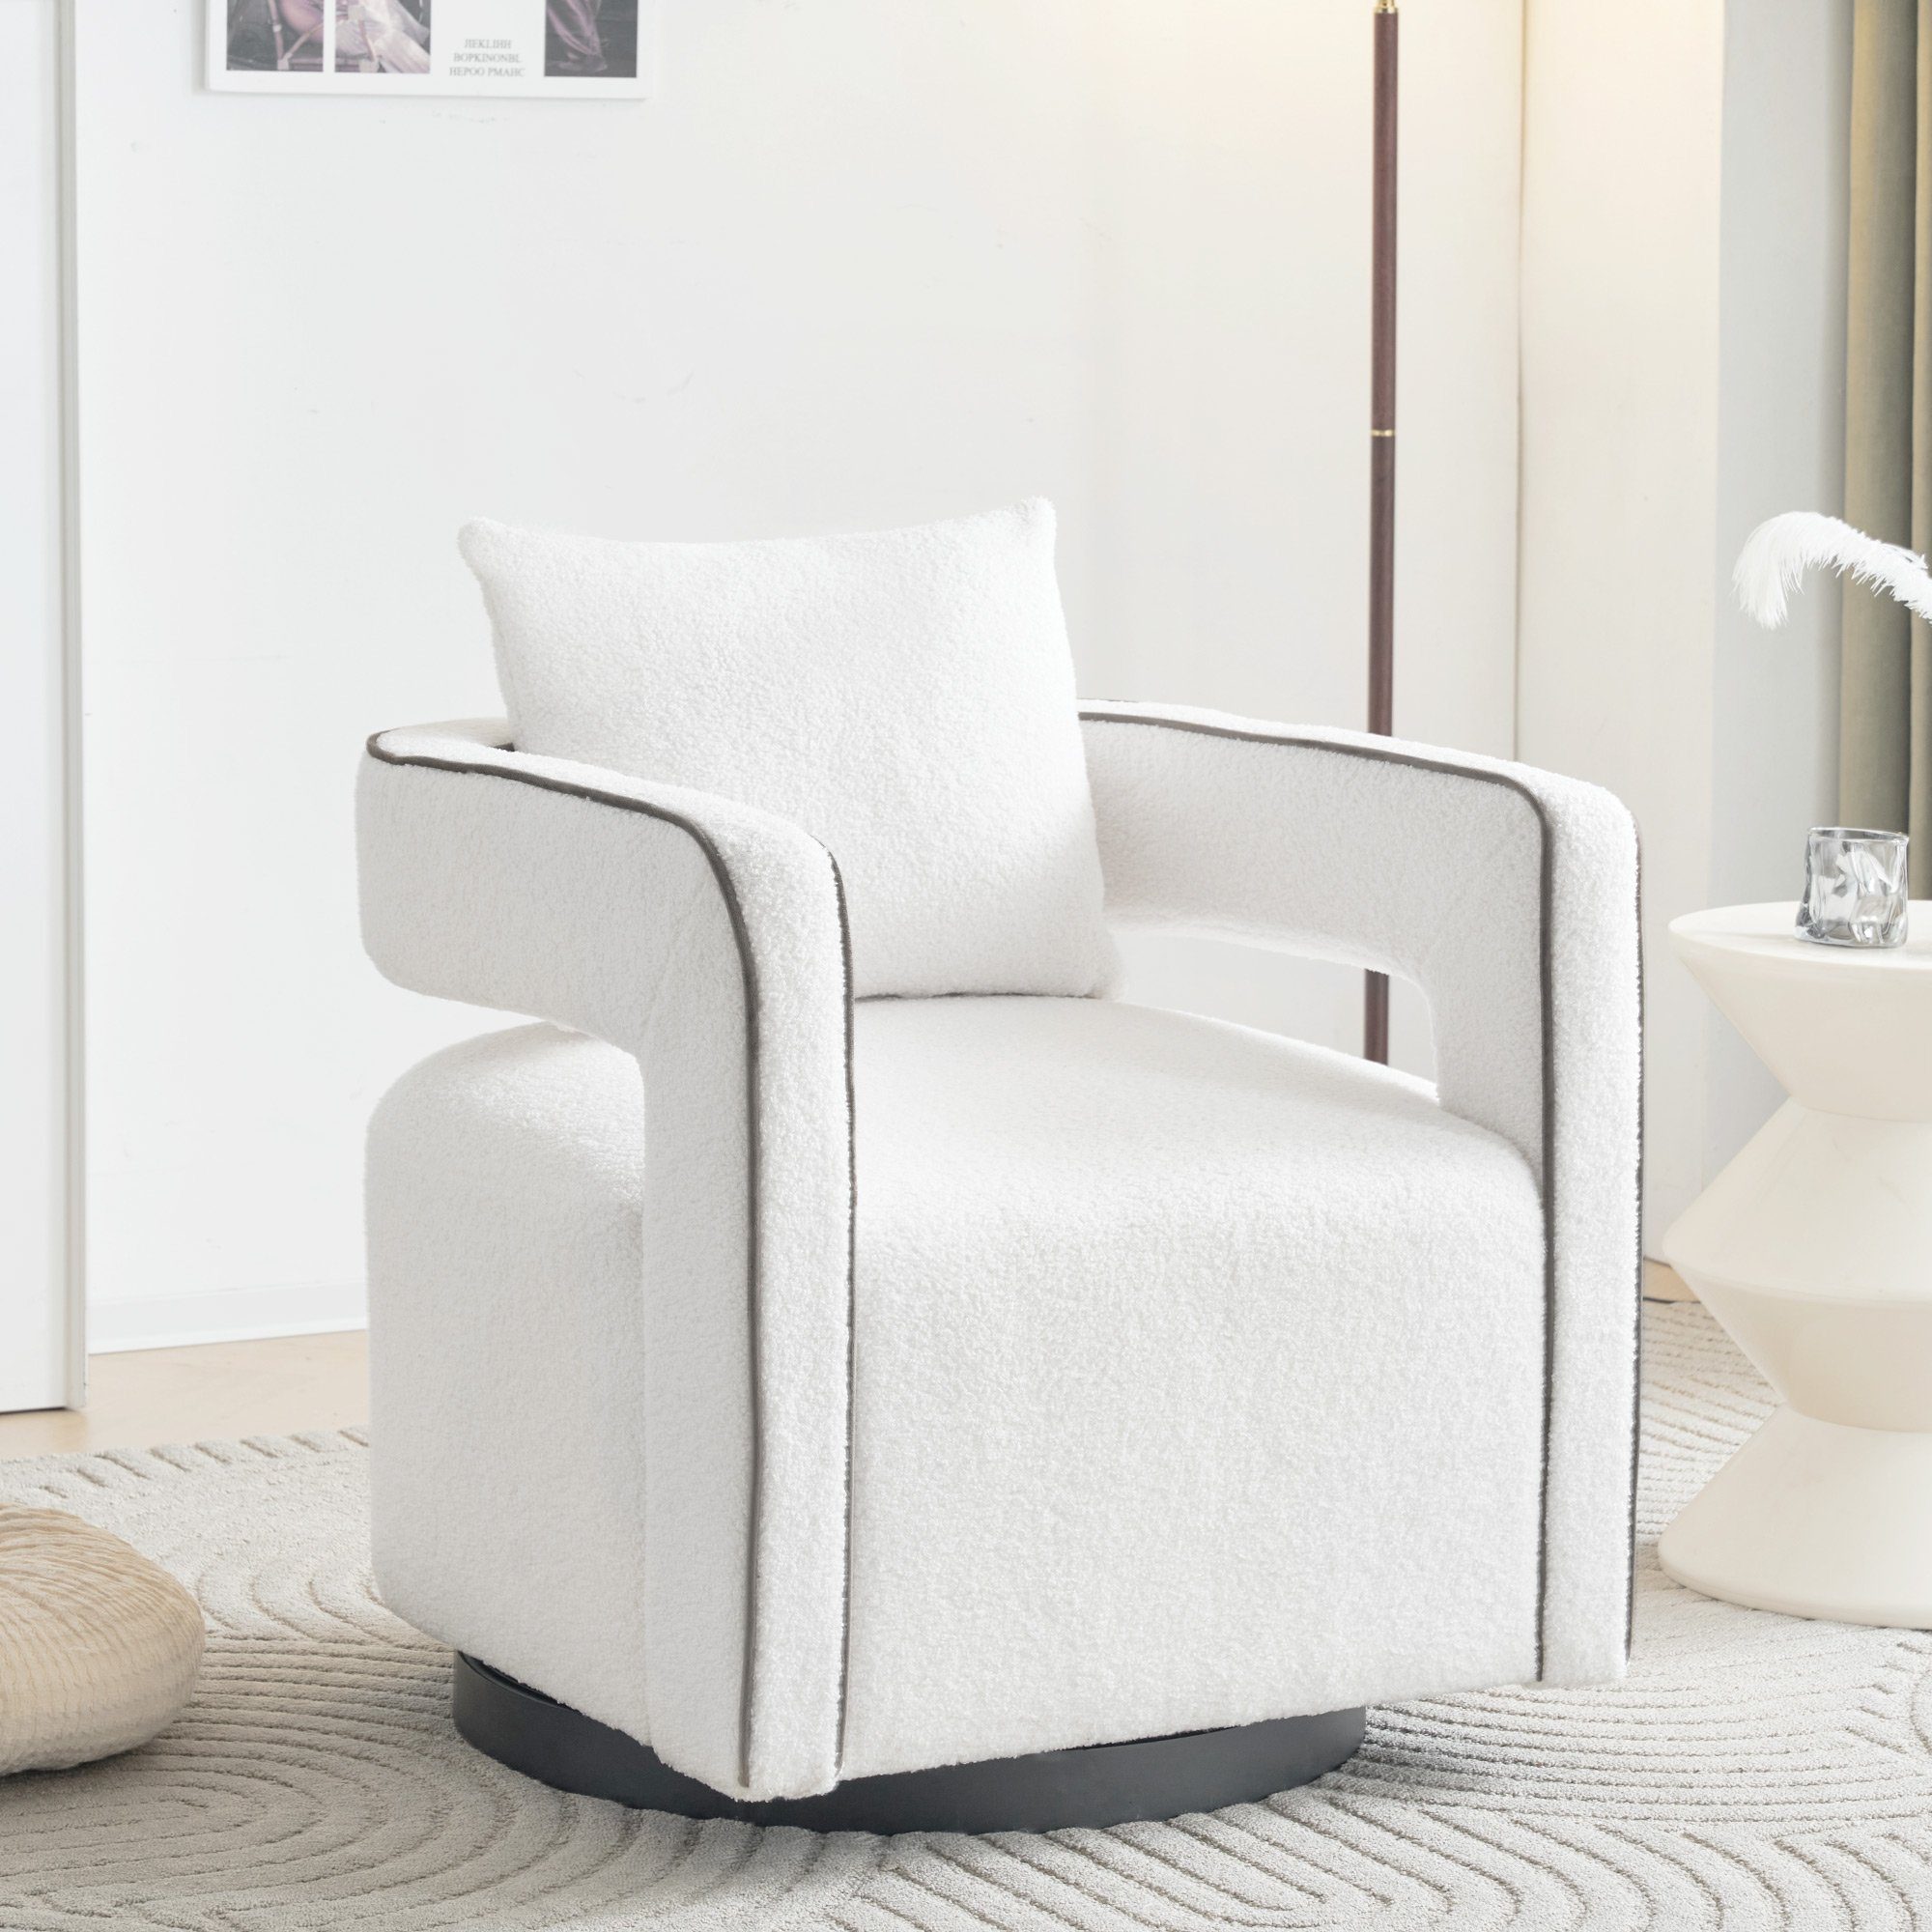 KLAM HOME Relaxsessel Drehsessel Polsterstuhl Einzelsofasessel (Freizeitstuhl mit Armlehnen), 360° drehbar TV-Sessel mit Kissen, für Wohn-, Schlaf- und Arbeitszimmer weiß/schwarz